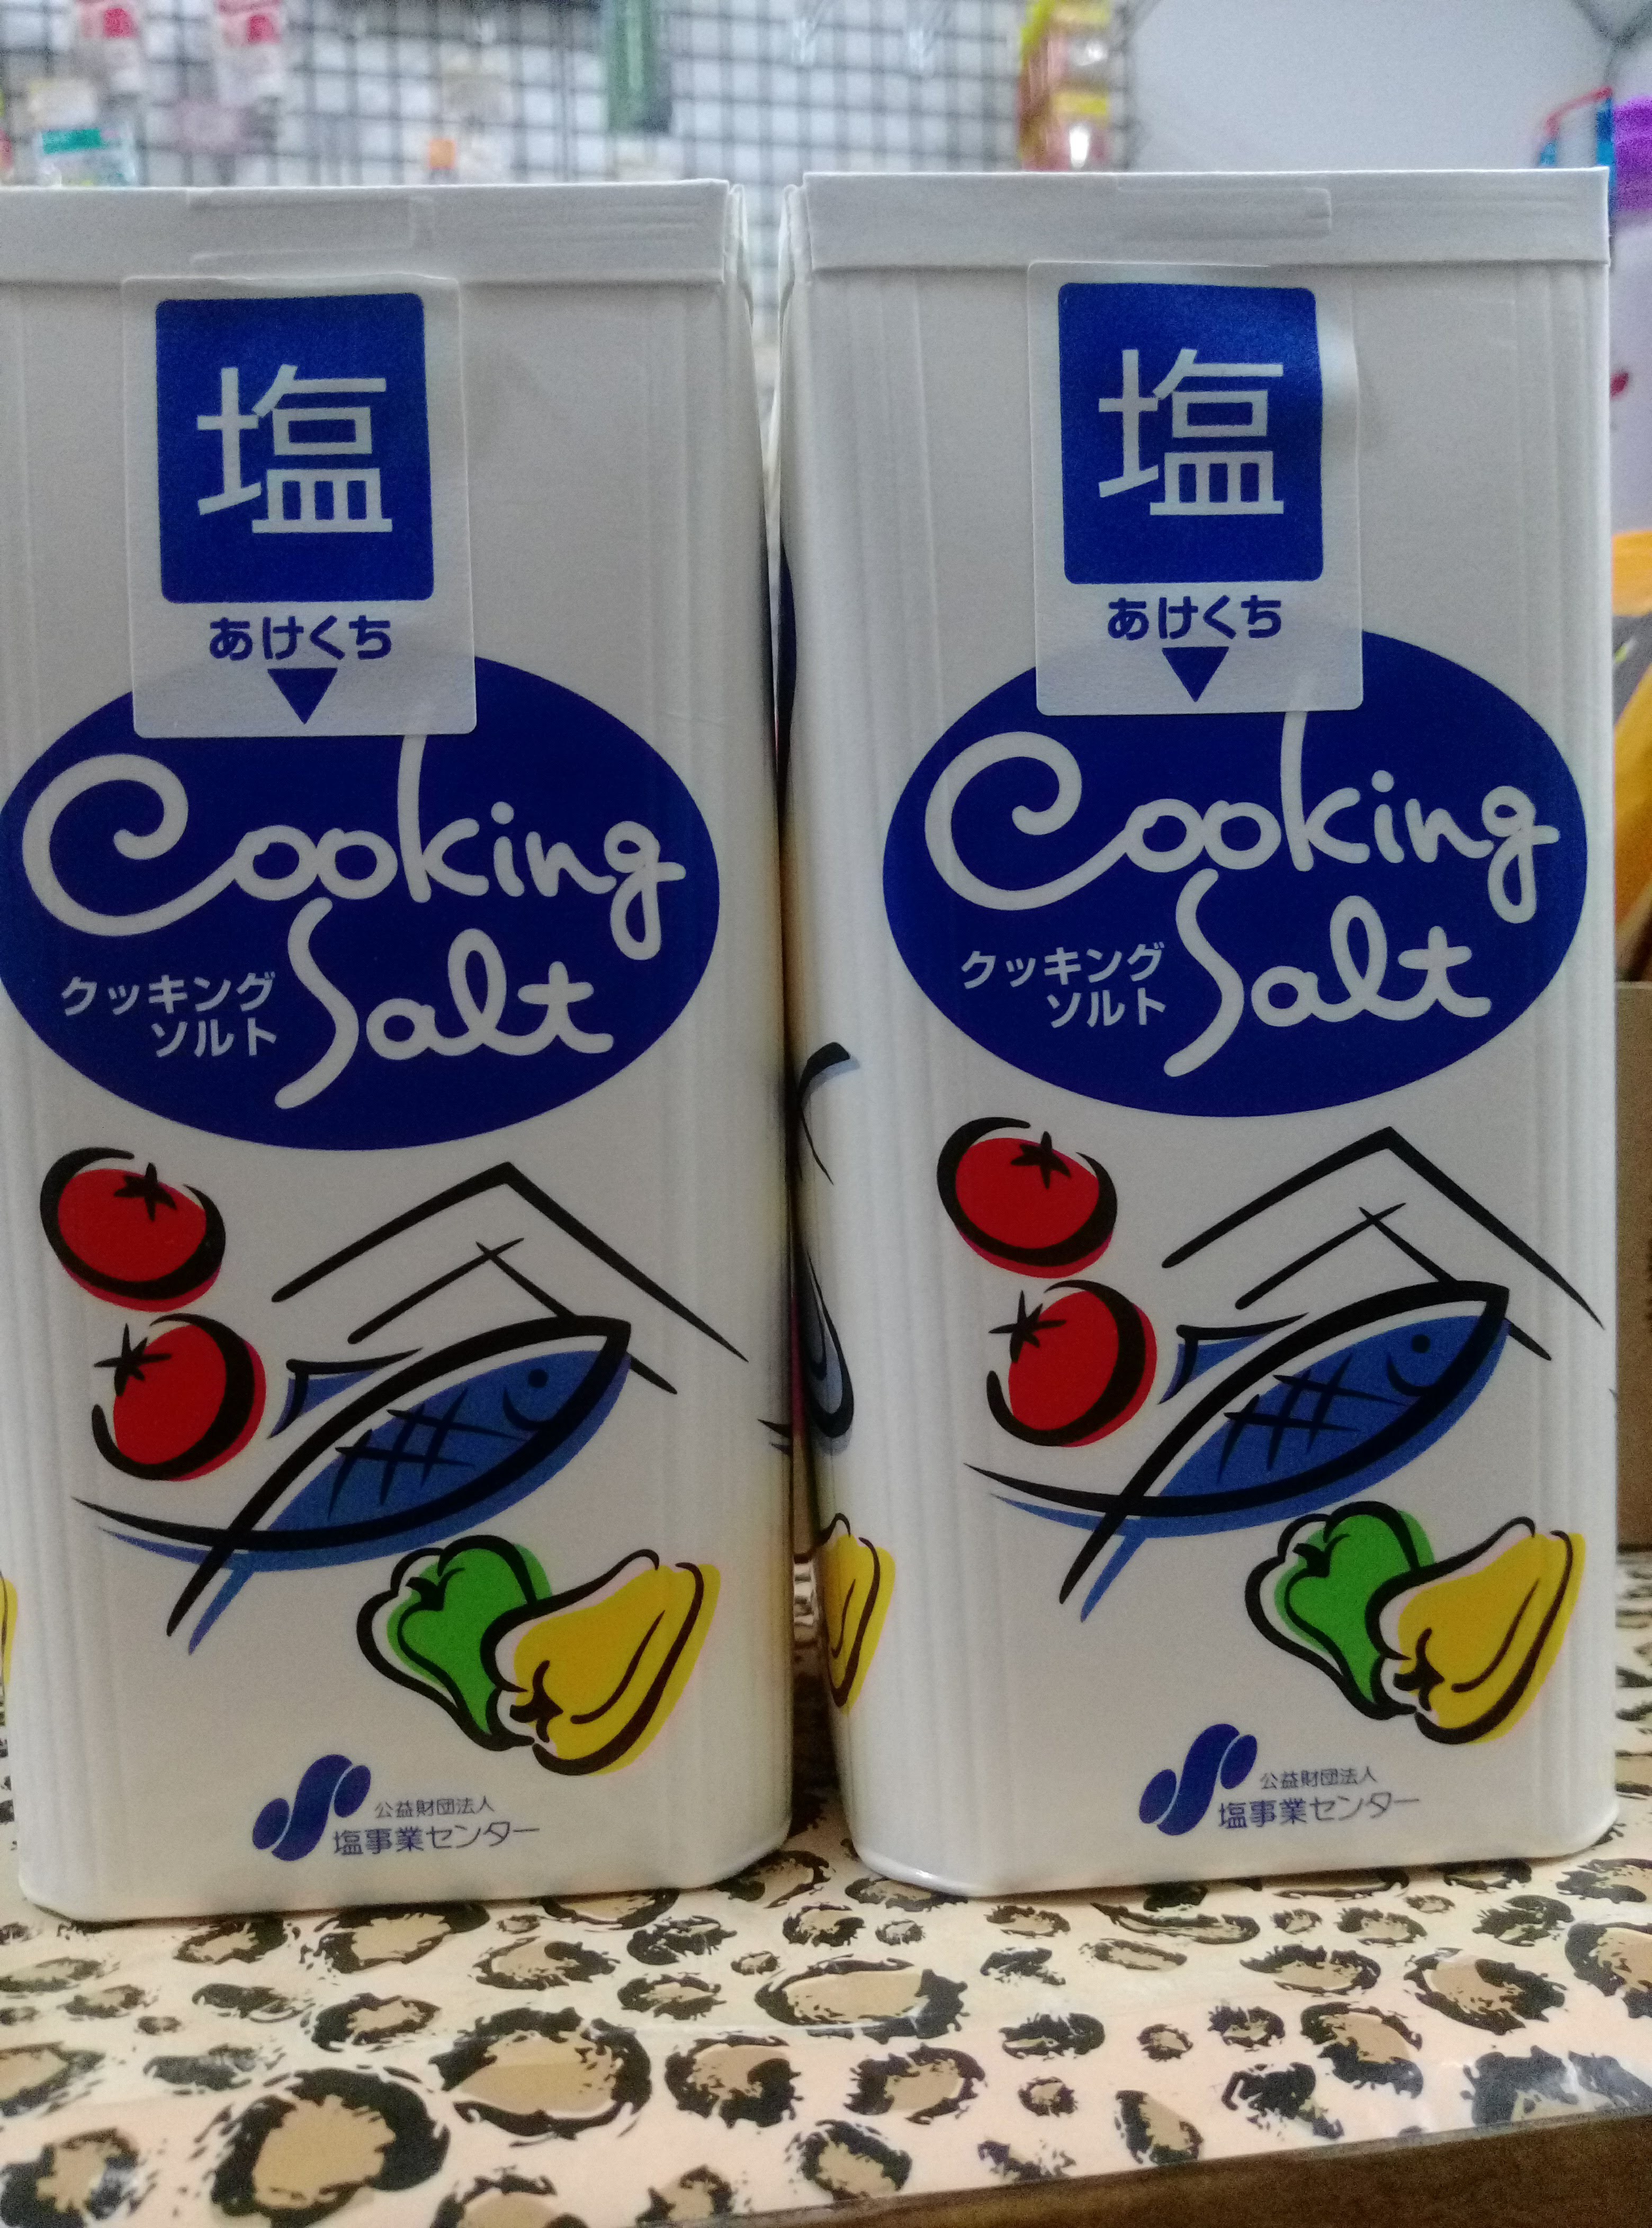 日本塩事業天日鹽盒裝家庭用鹽800g